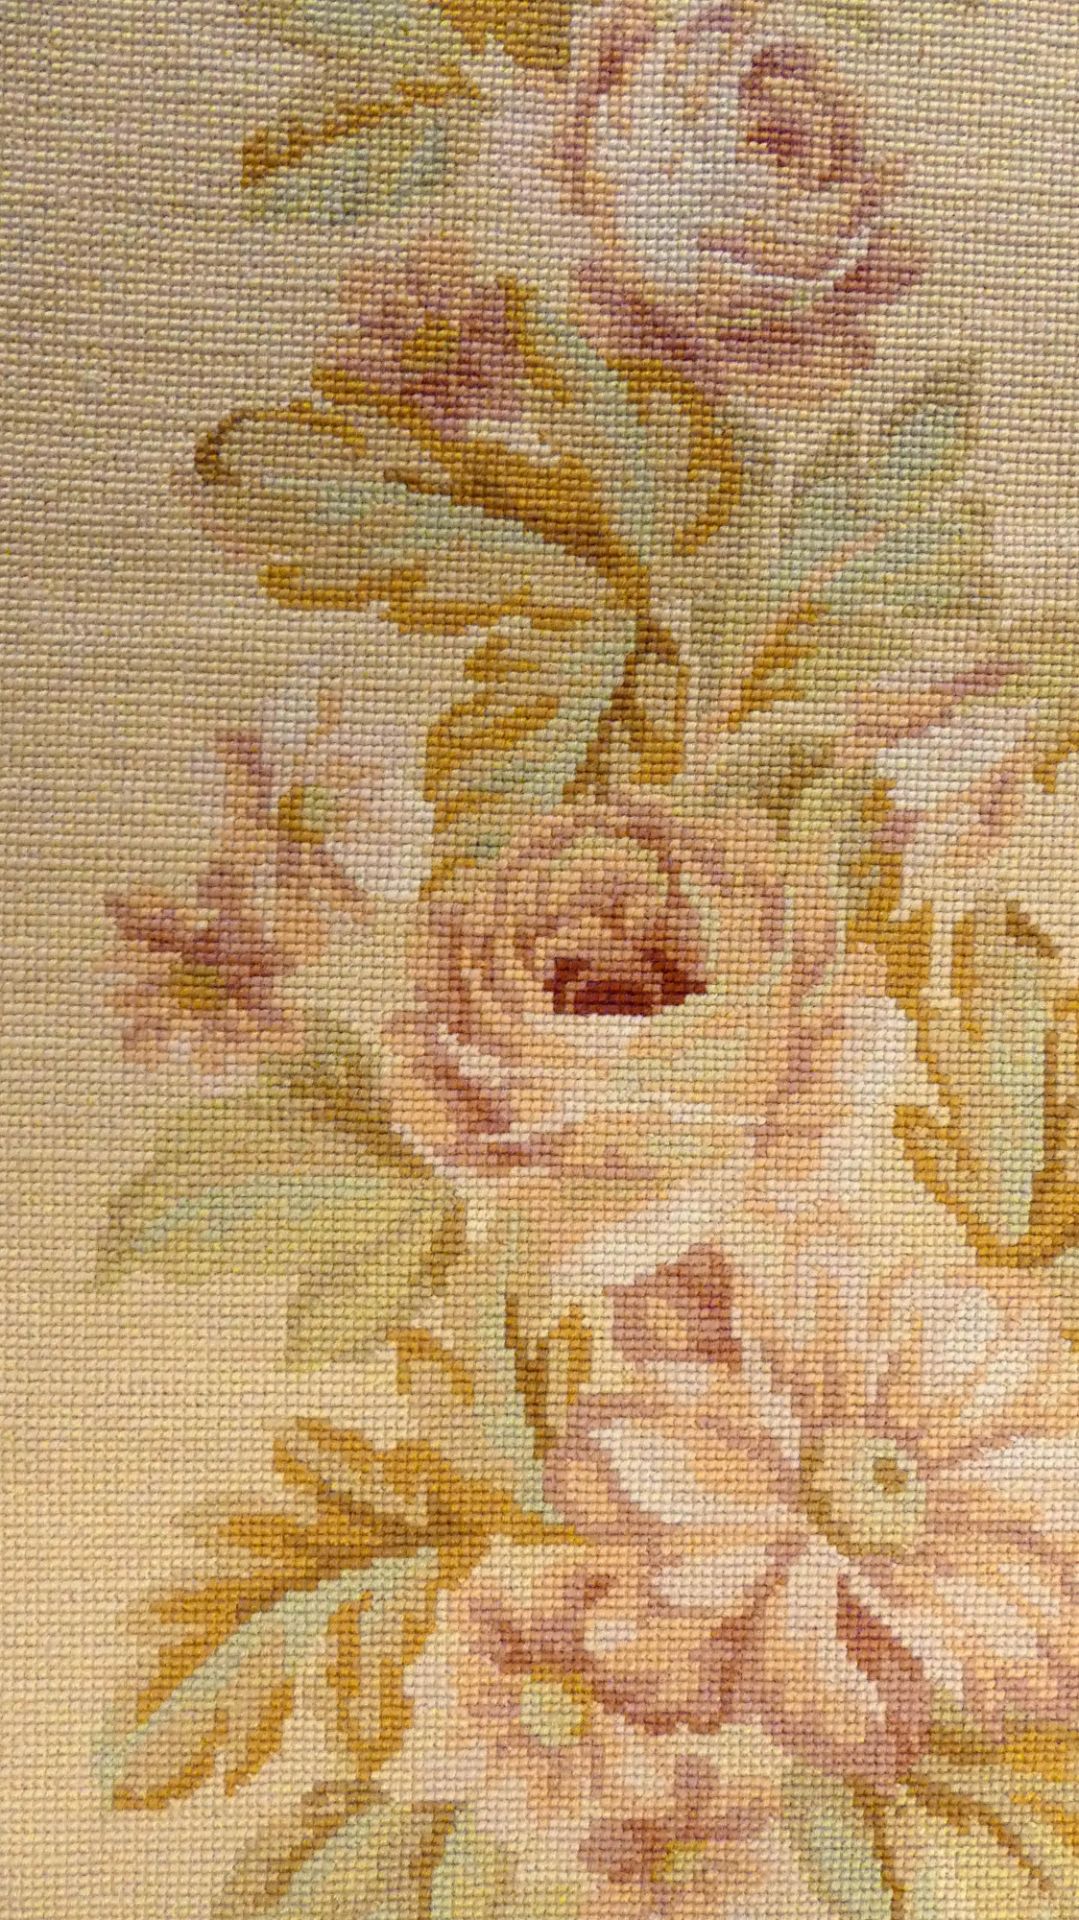 Aubusson-Teppich, Florales Design, beige/braun/rosafarben, - Bild 2 aus 4